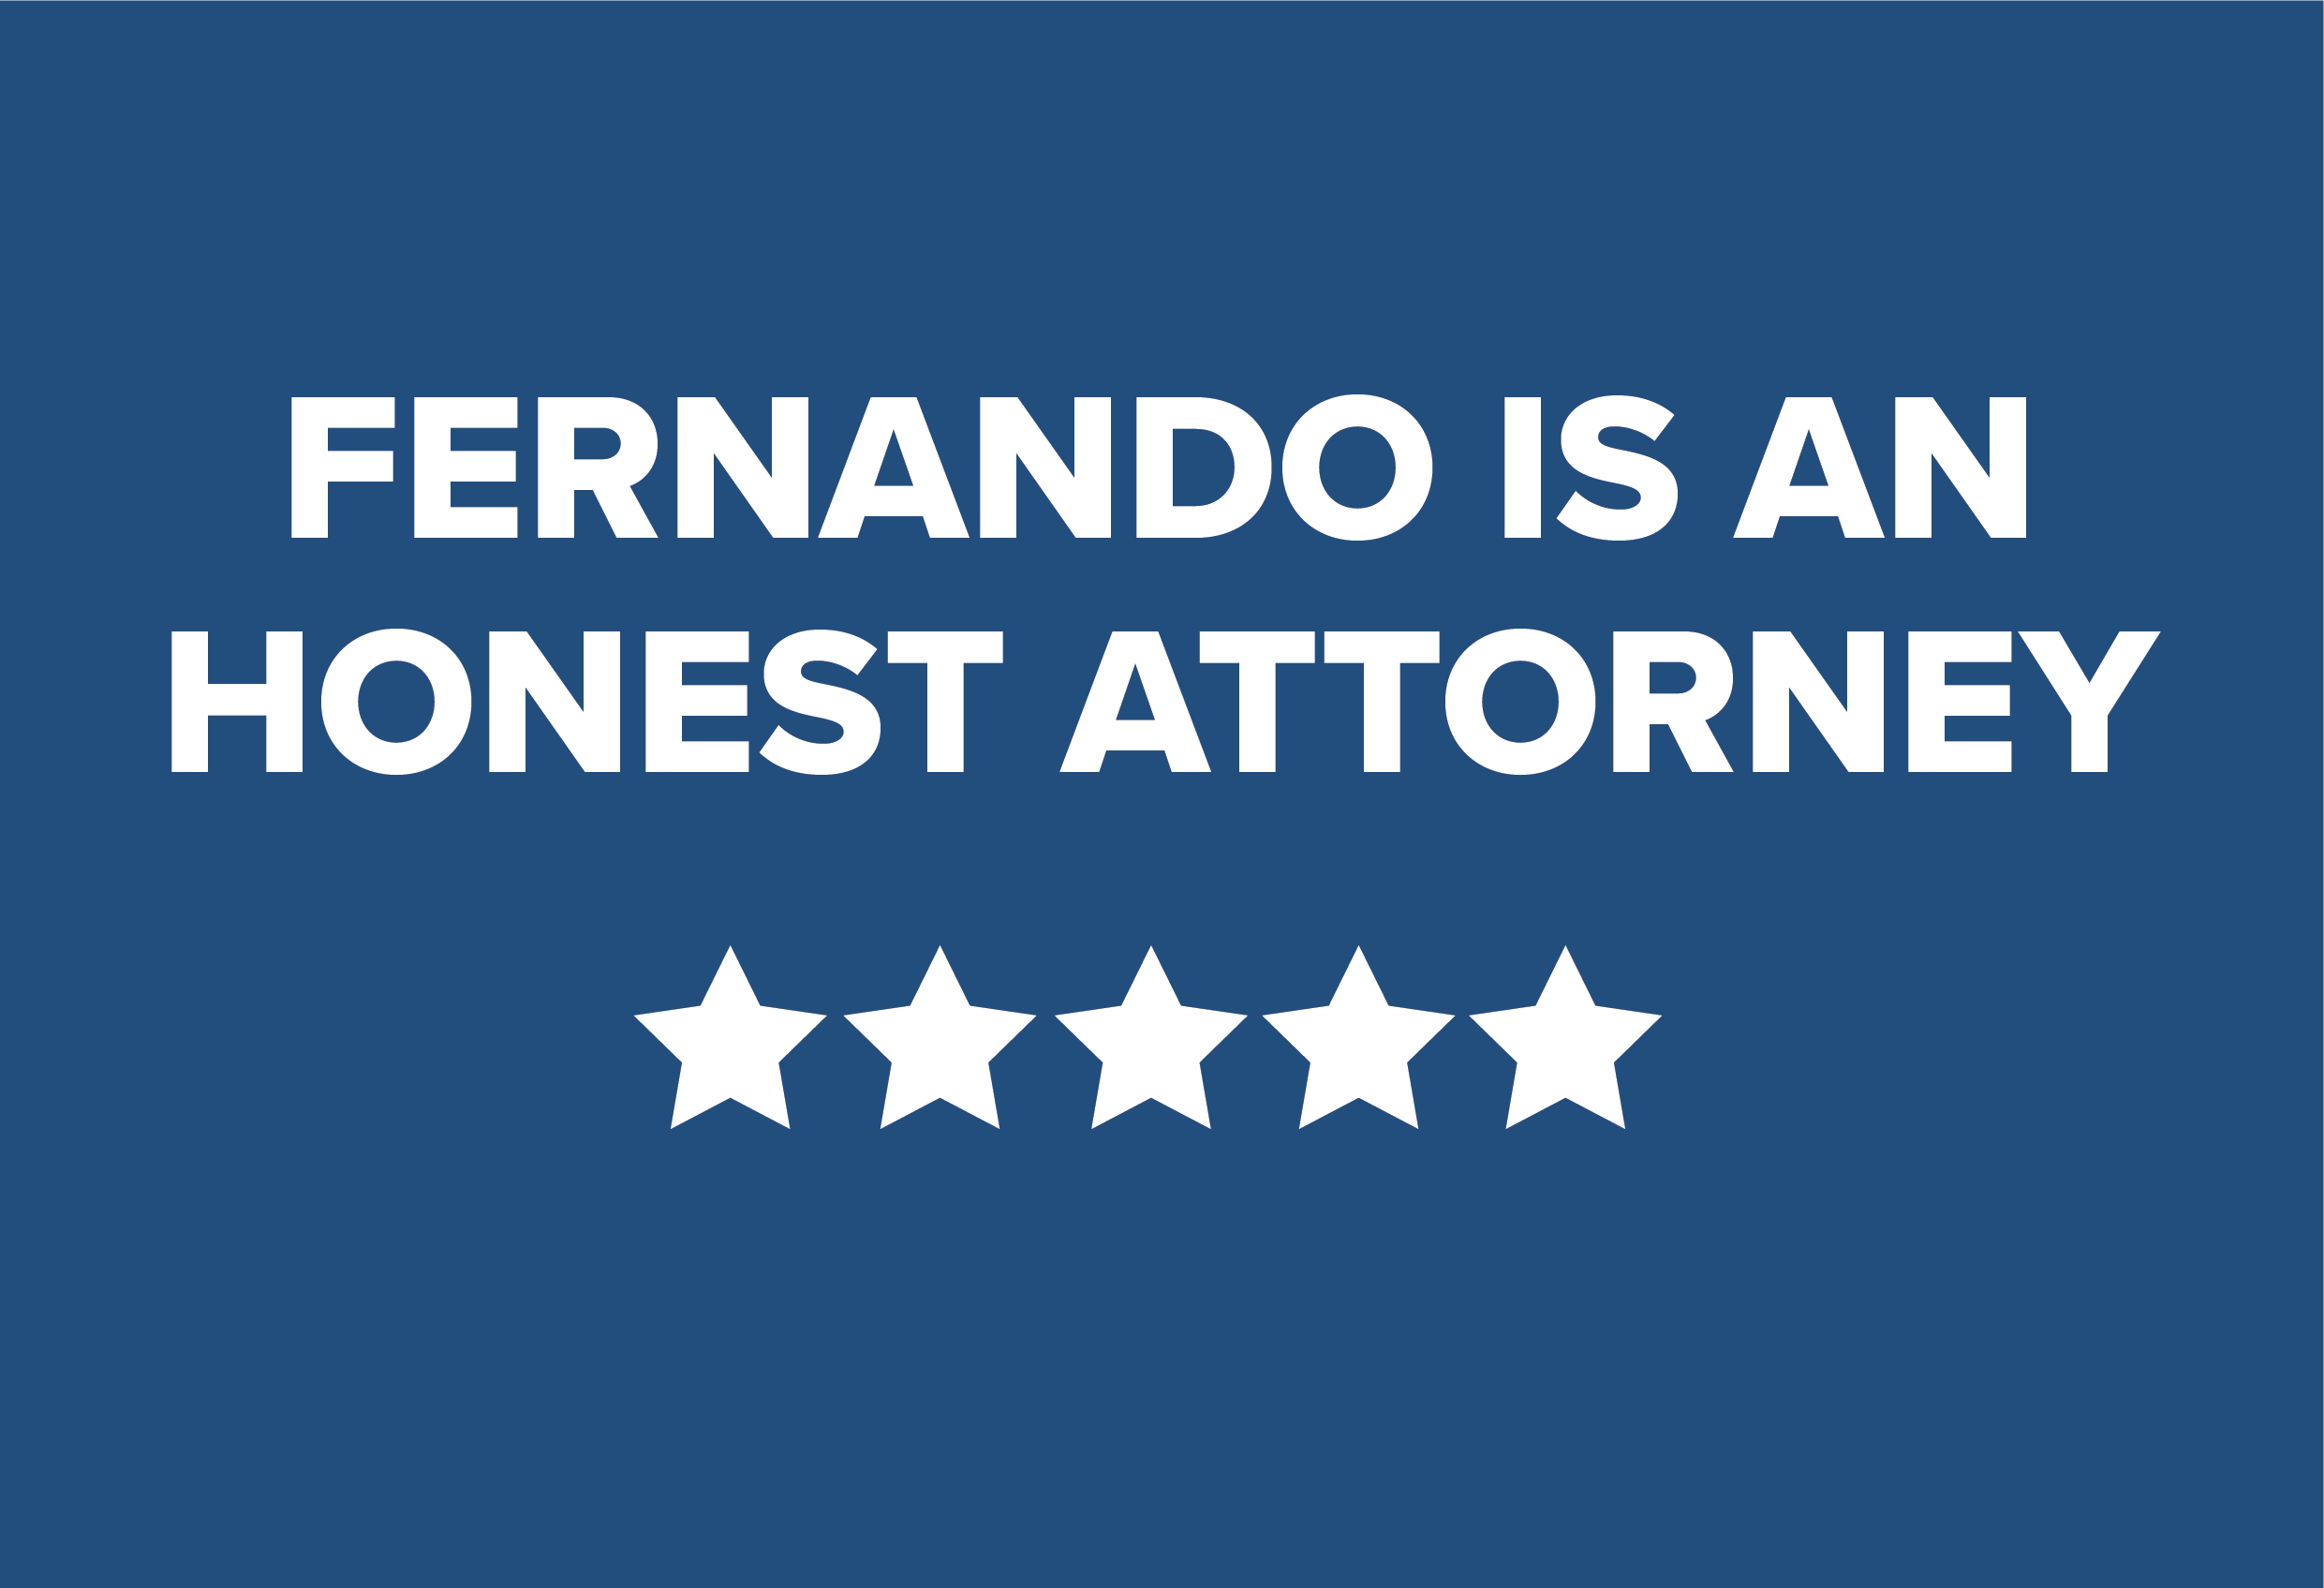 Fernando is an honest attorney